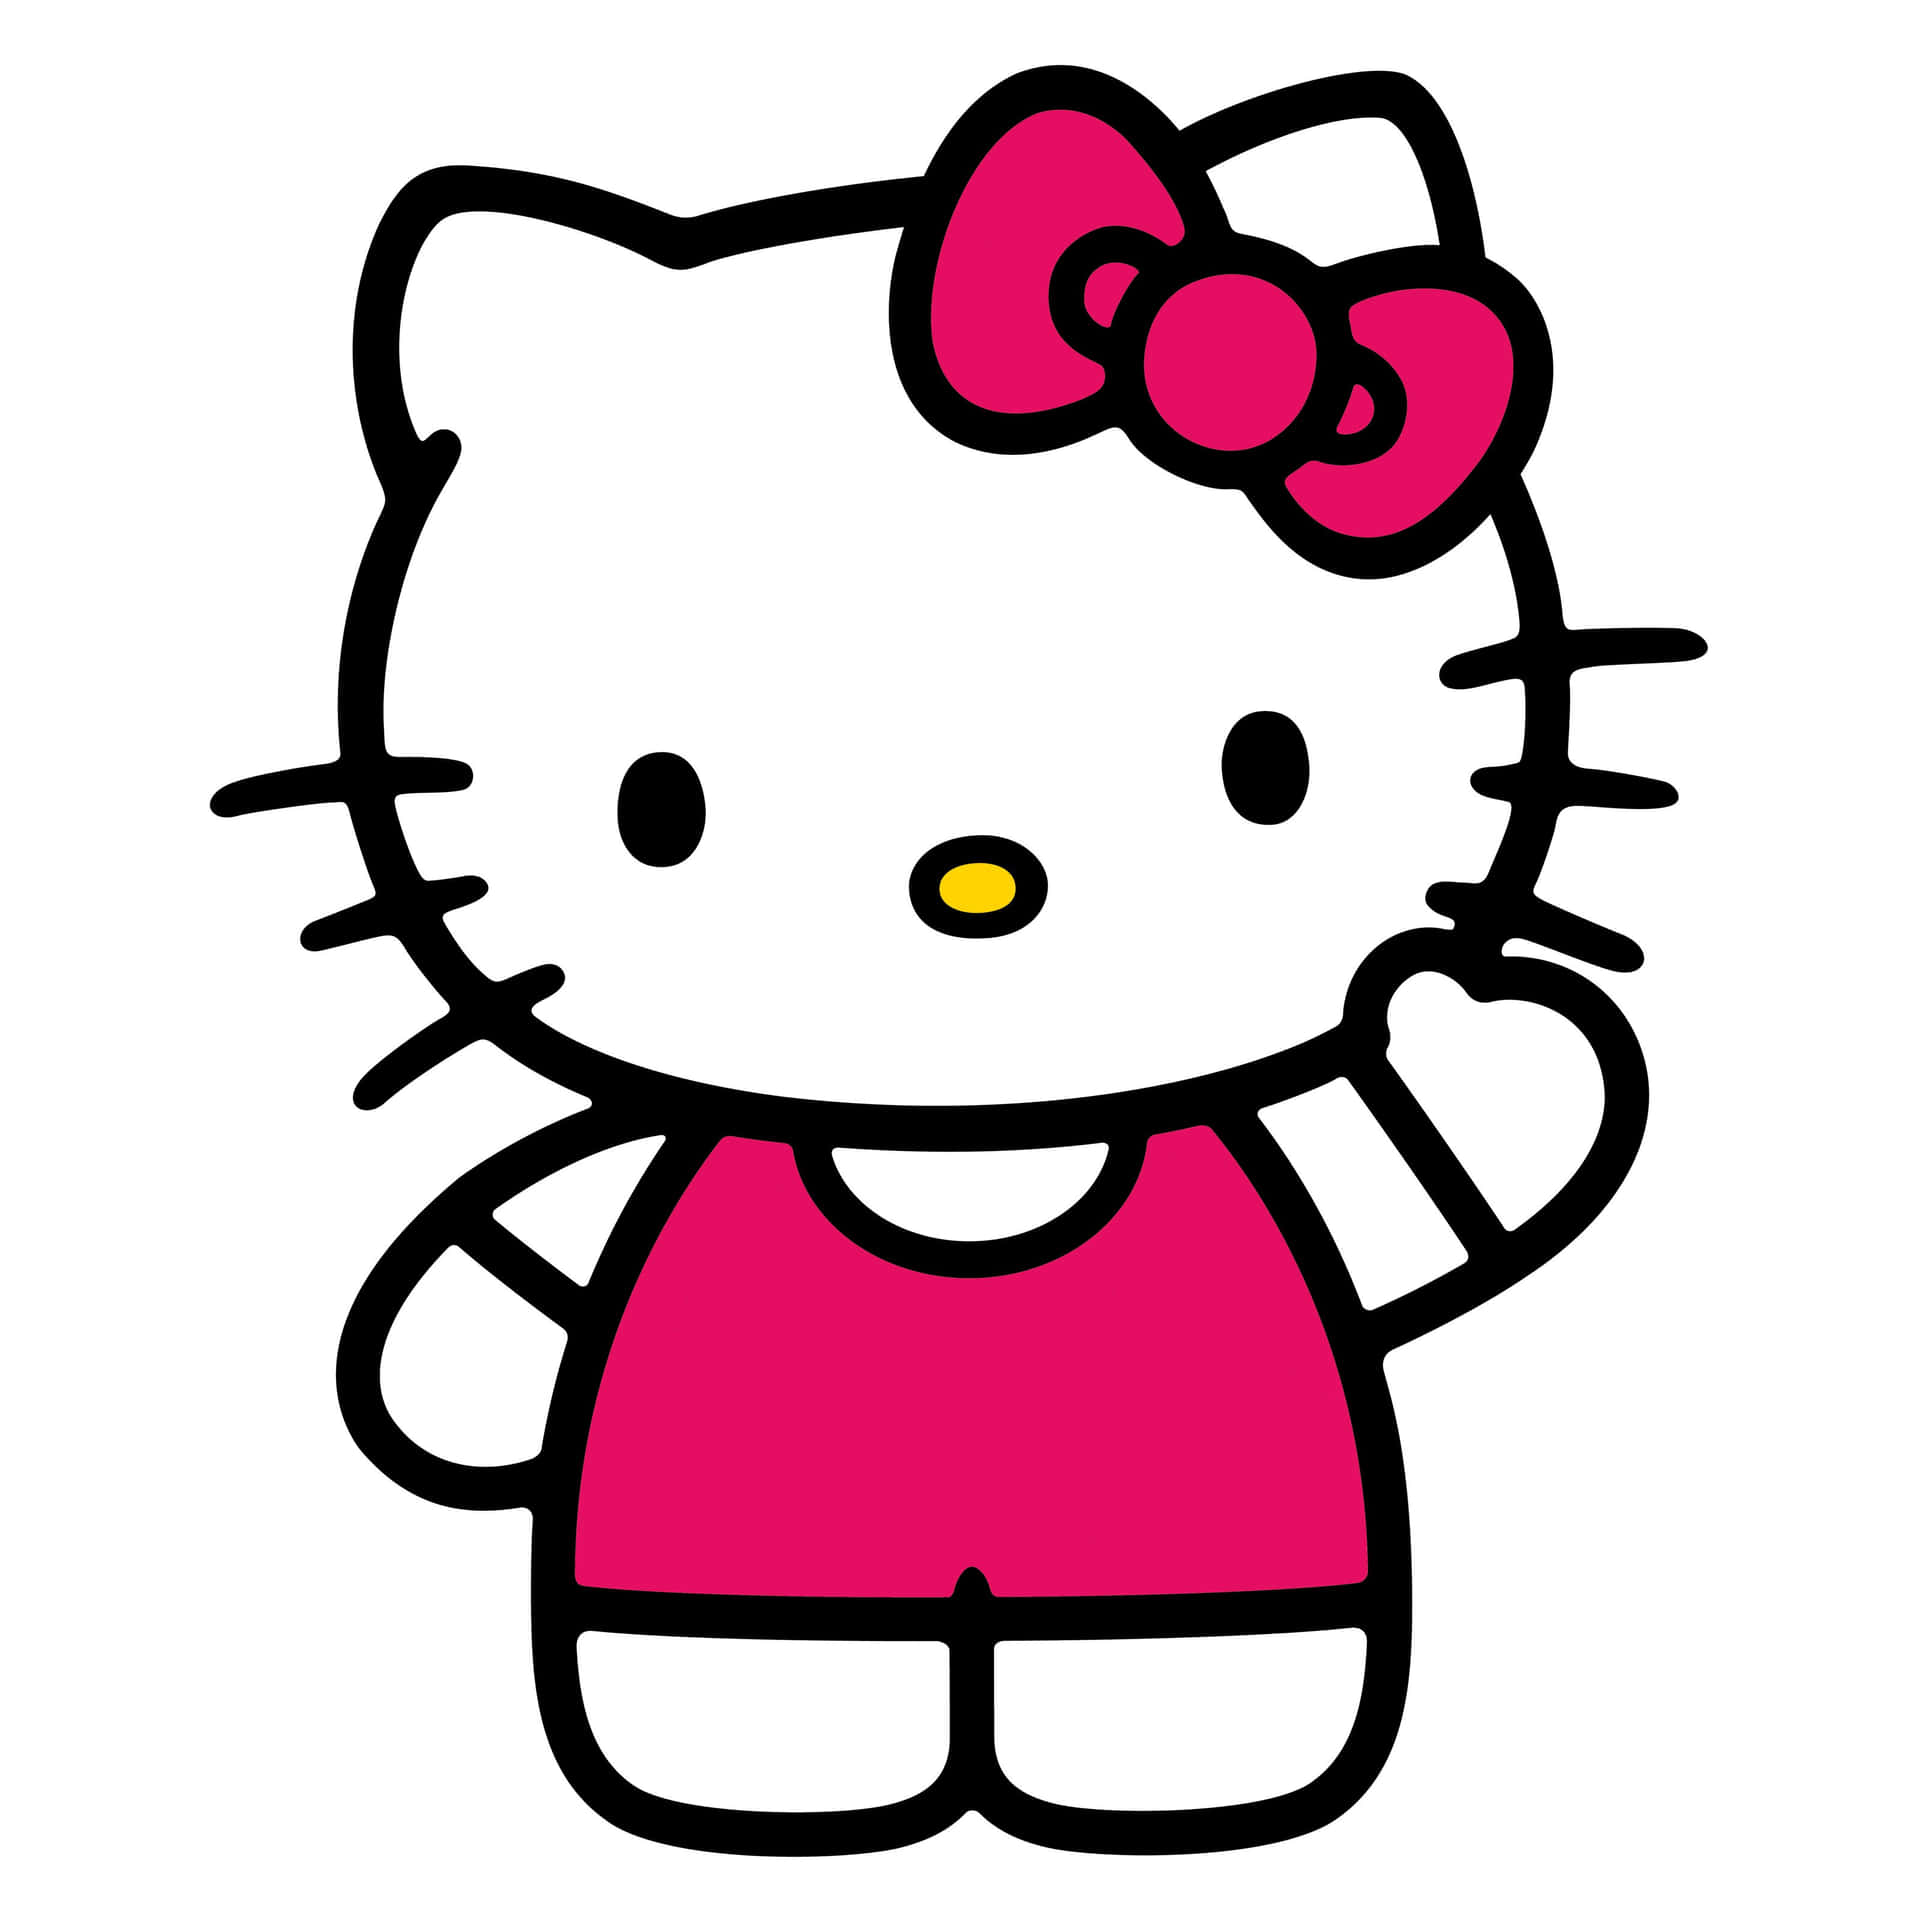 Ciaoa Tutti, Oggi Parleremo Di Un Wallpaper Perfetto Per Il Tuo Computer O Il Tuo Smartphone: Il Dolcissimo Hello Kitty Che Saluta Sulla Sfondo Rosa.